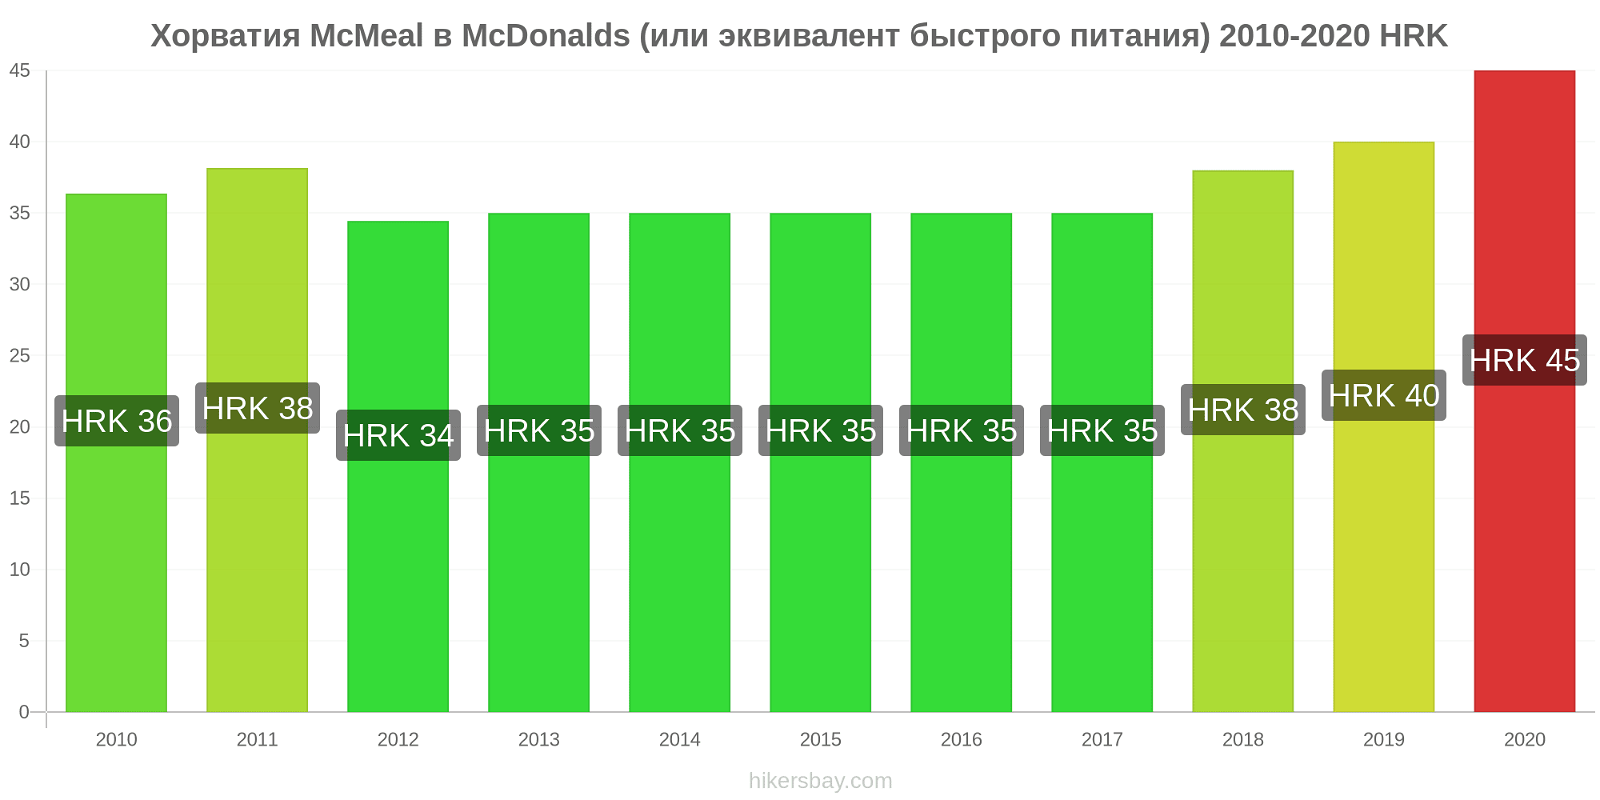 Хорватия изменения цен McMeal в McDonalds (или эквивалент быстрого питания) hikersbay.com